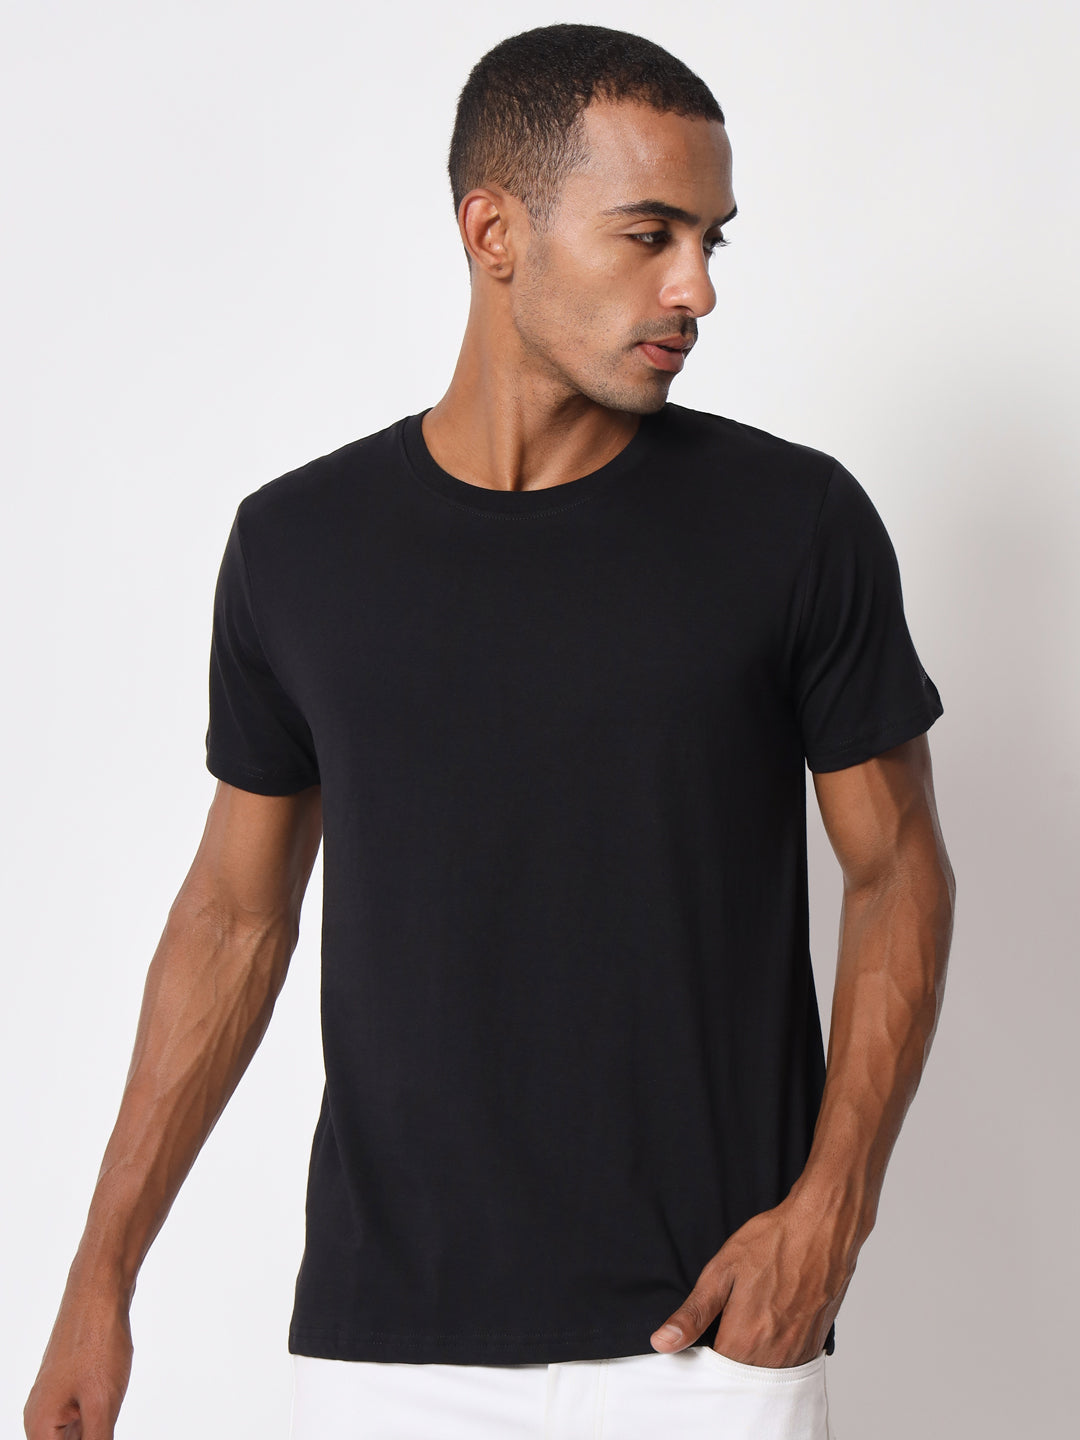 Cotton Solid Round Neck Half Sleeve Black Men's T-shirt